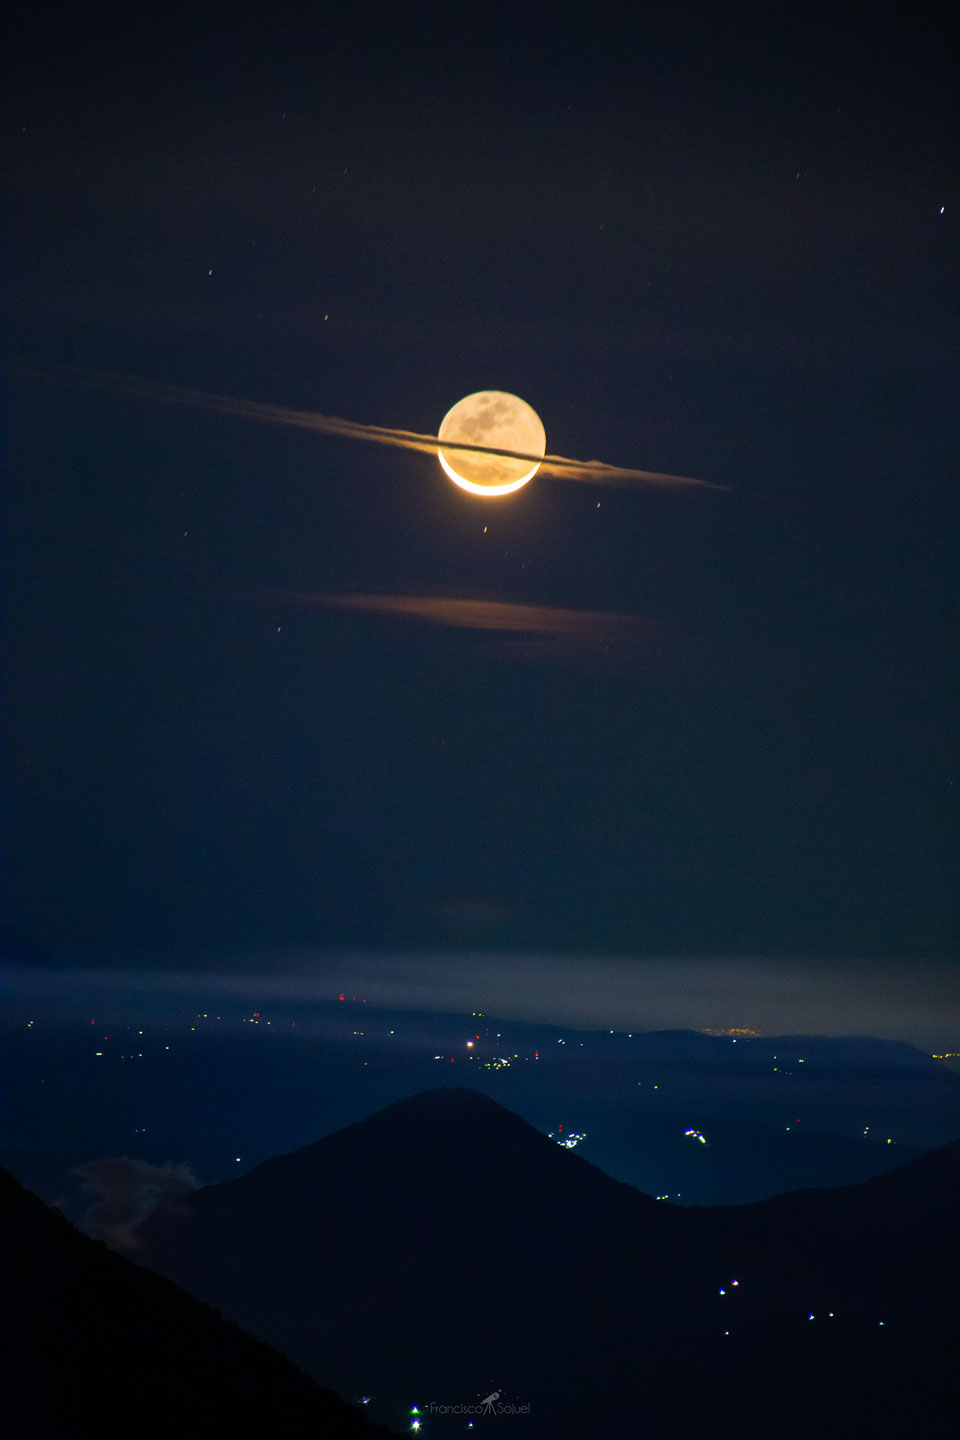 Das Bild zeigt den Mond am Nachthimmel der Erde hinter einem Wolkenstreifen, sodass er aussieht wie ein riesiger Saturn.